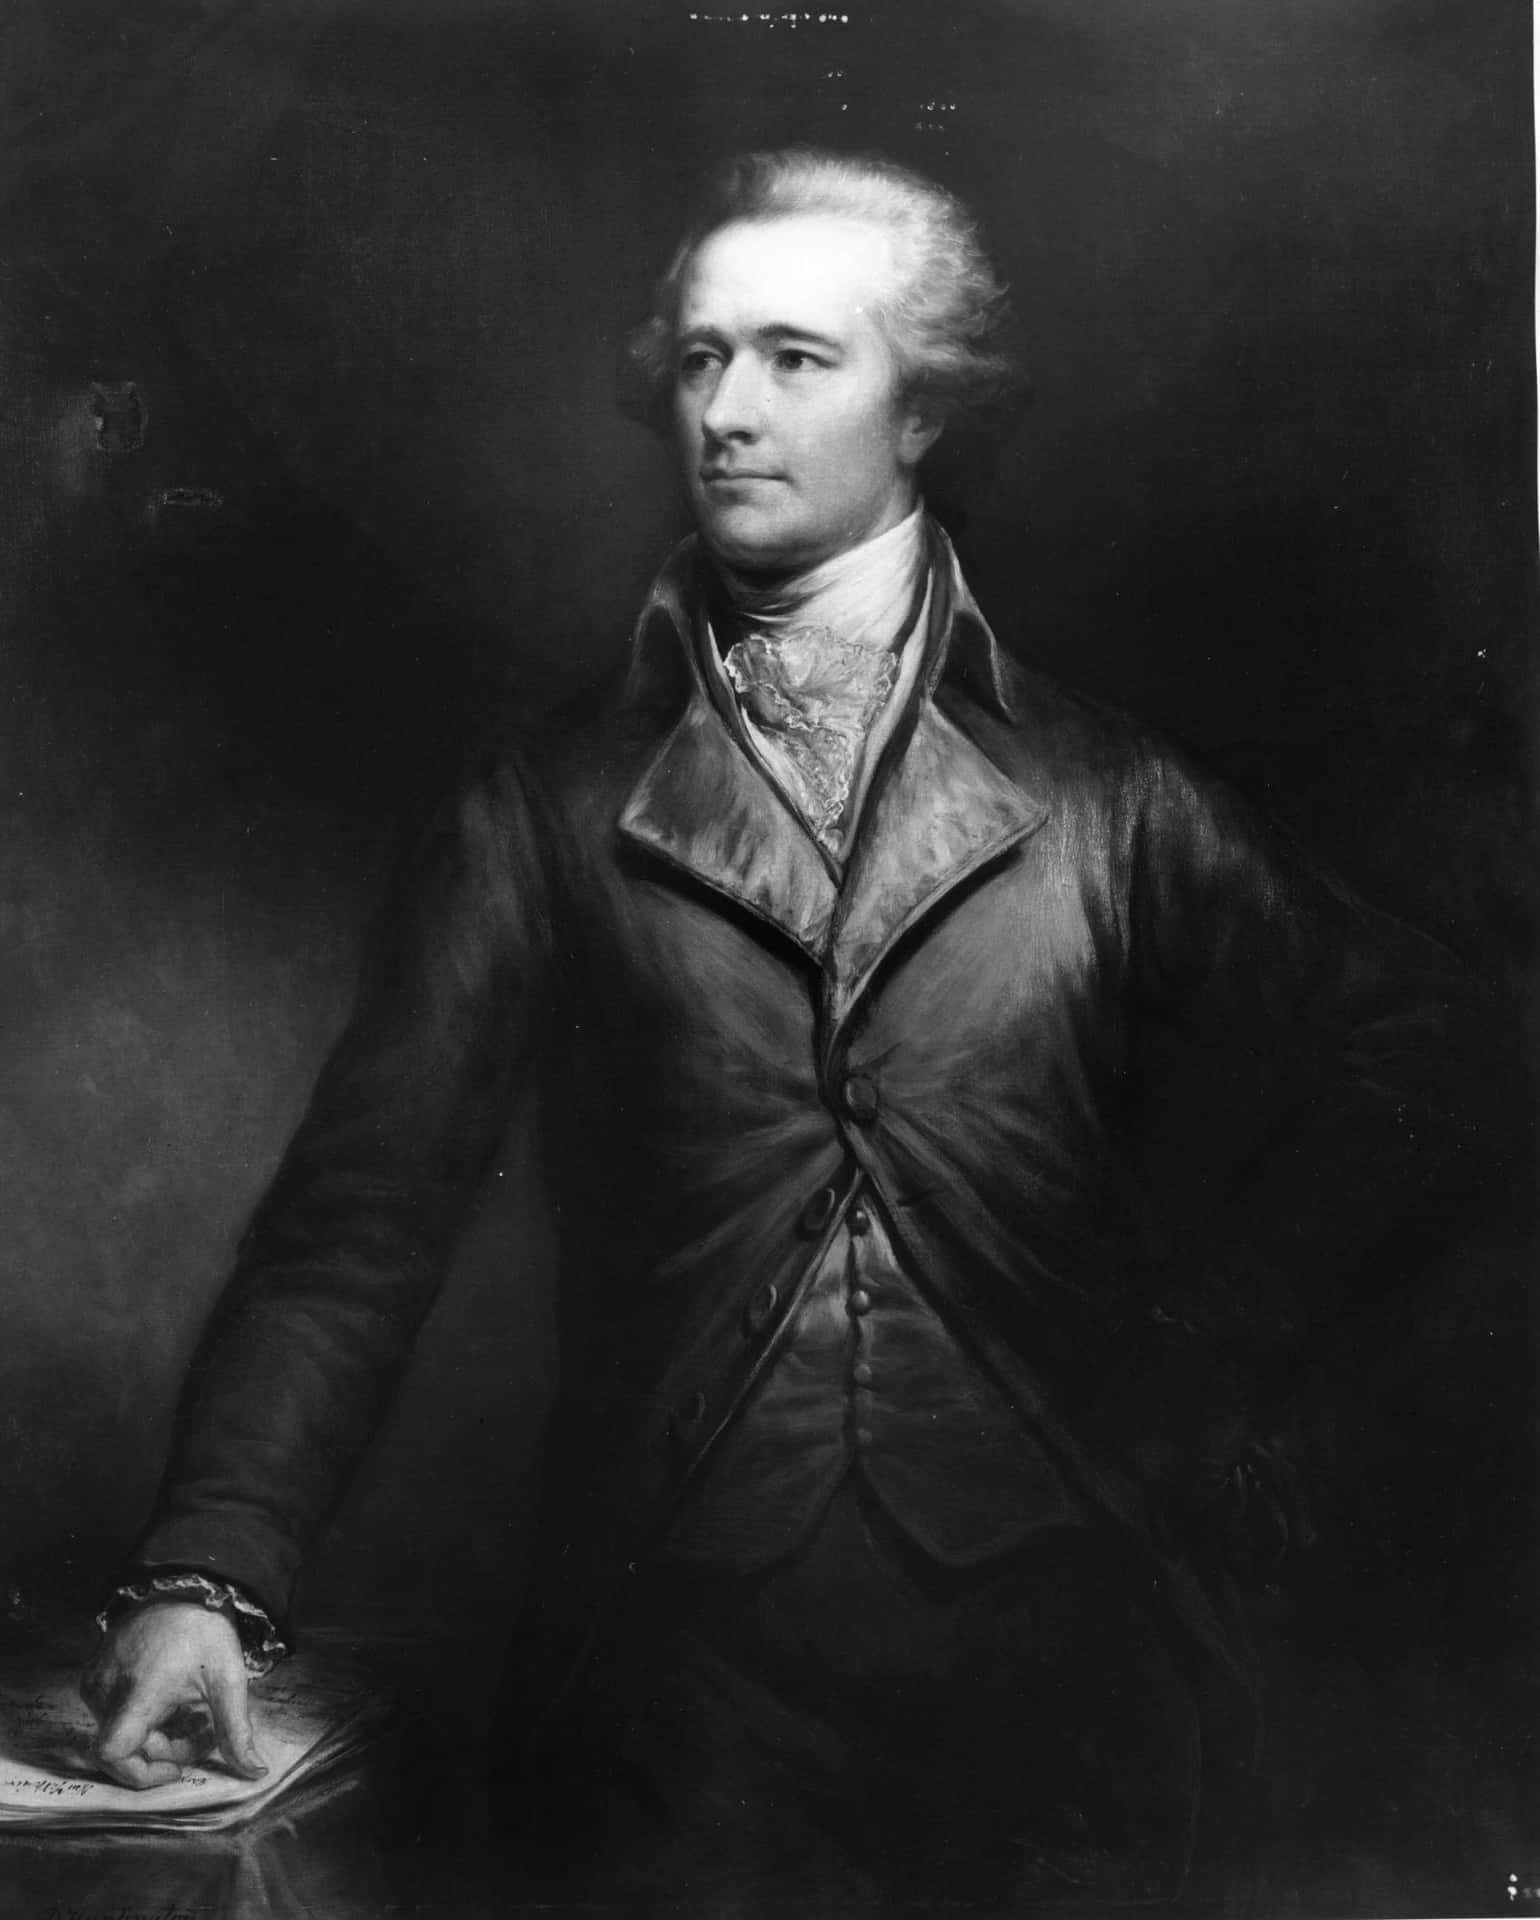 Retratode Alexander Hamilton